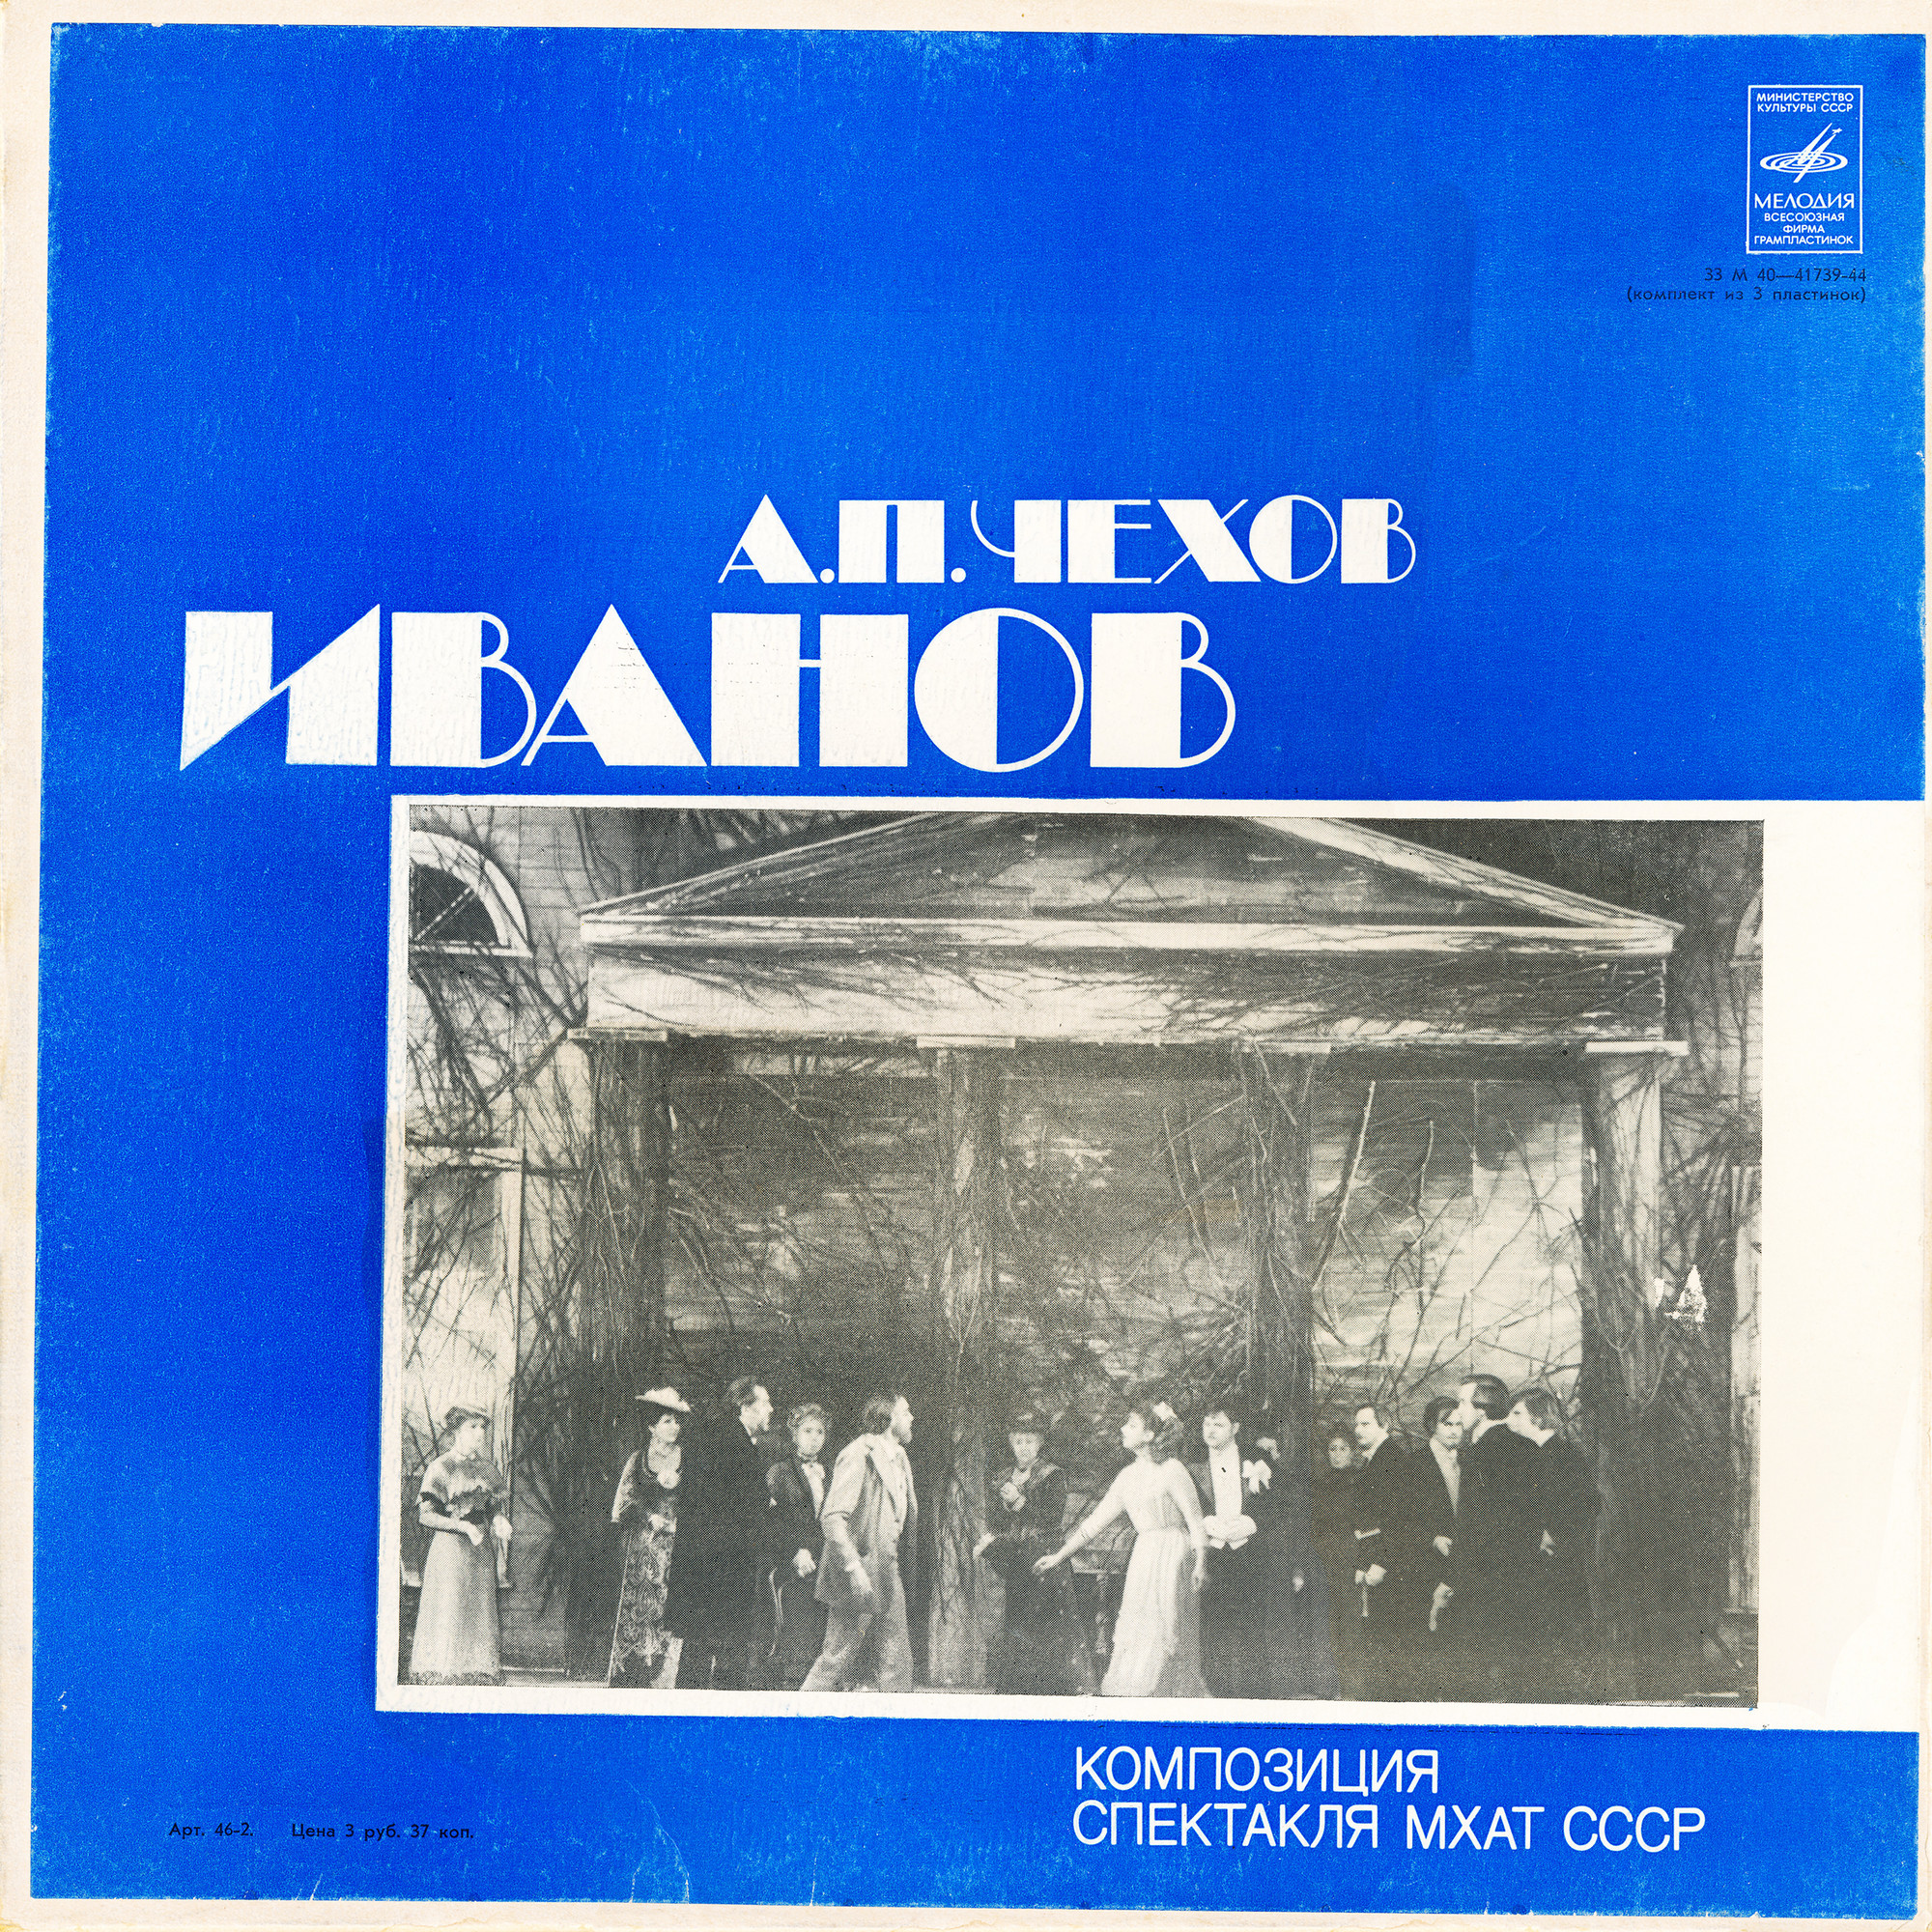 A. ЧЕХОВ (1860—1904): Иванов (композиция спектакля МХАТ СССР)